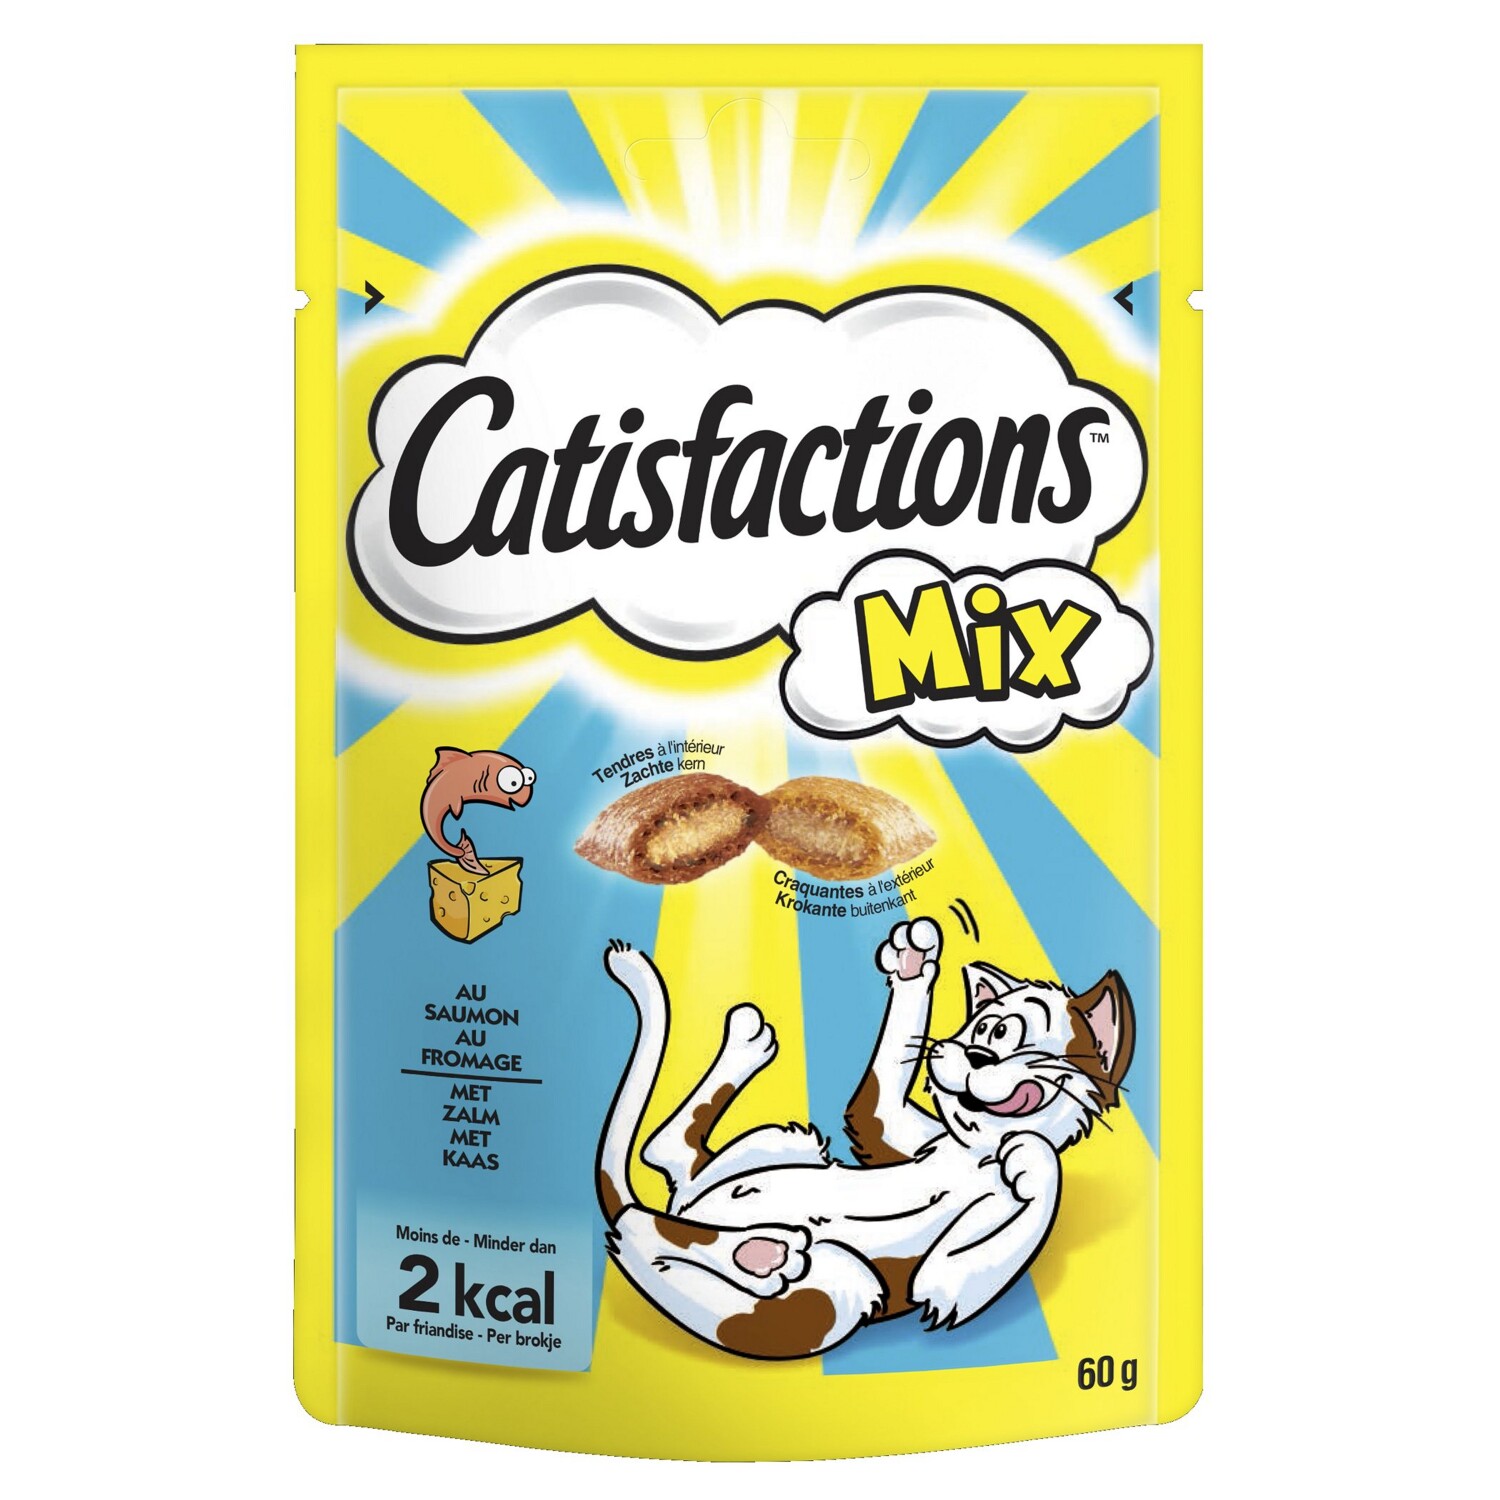 Afbeelding Catisfactions Mix Zalm en Kaas kattensnoep Per verpakking door Tuinadvies.be